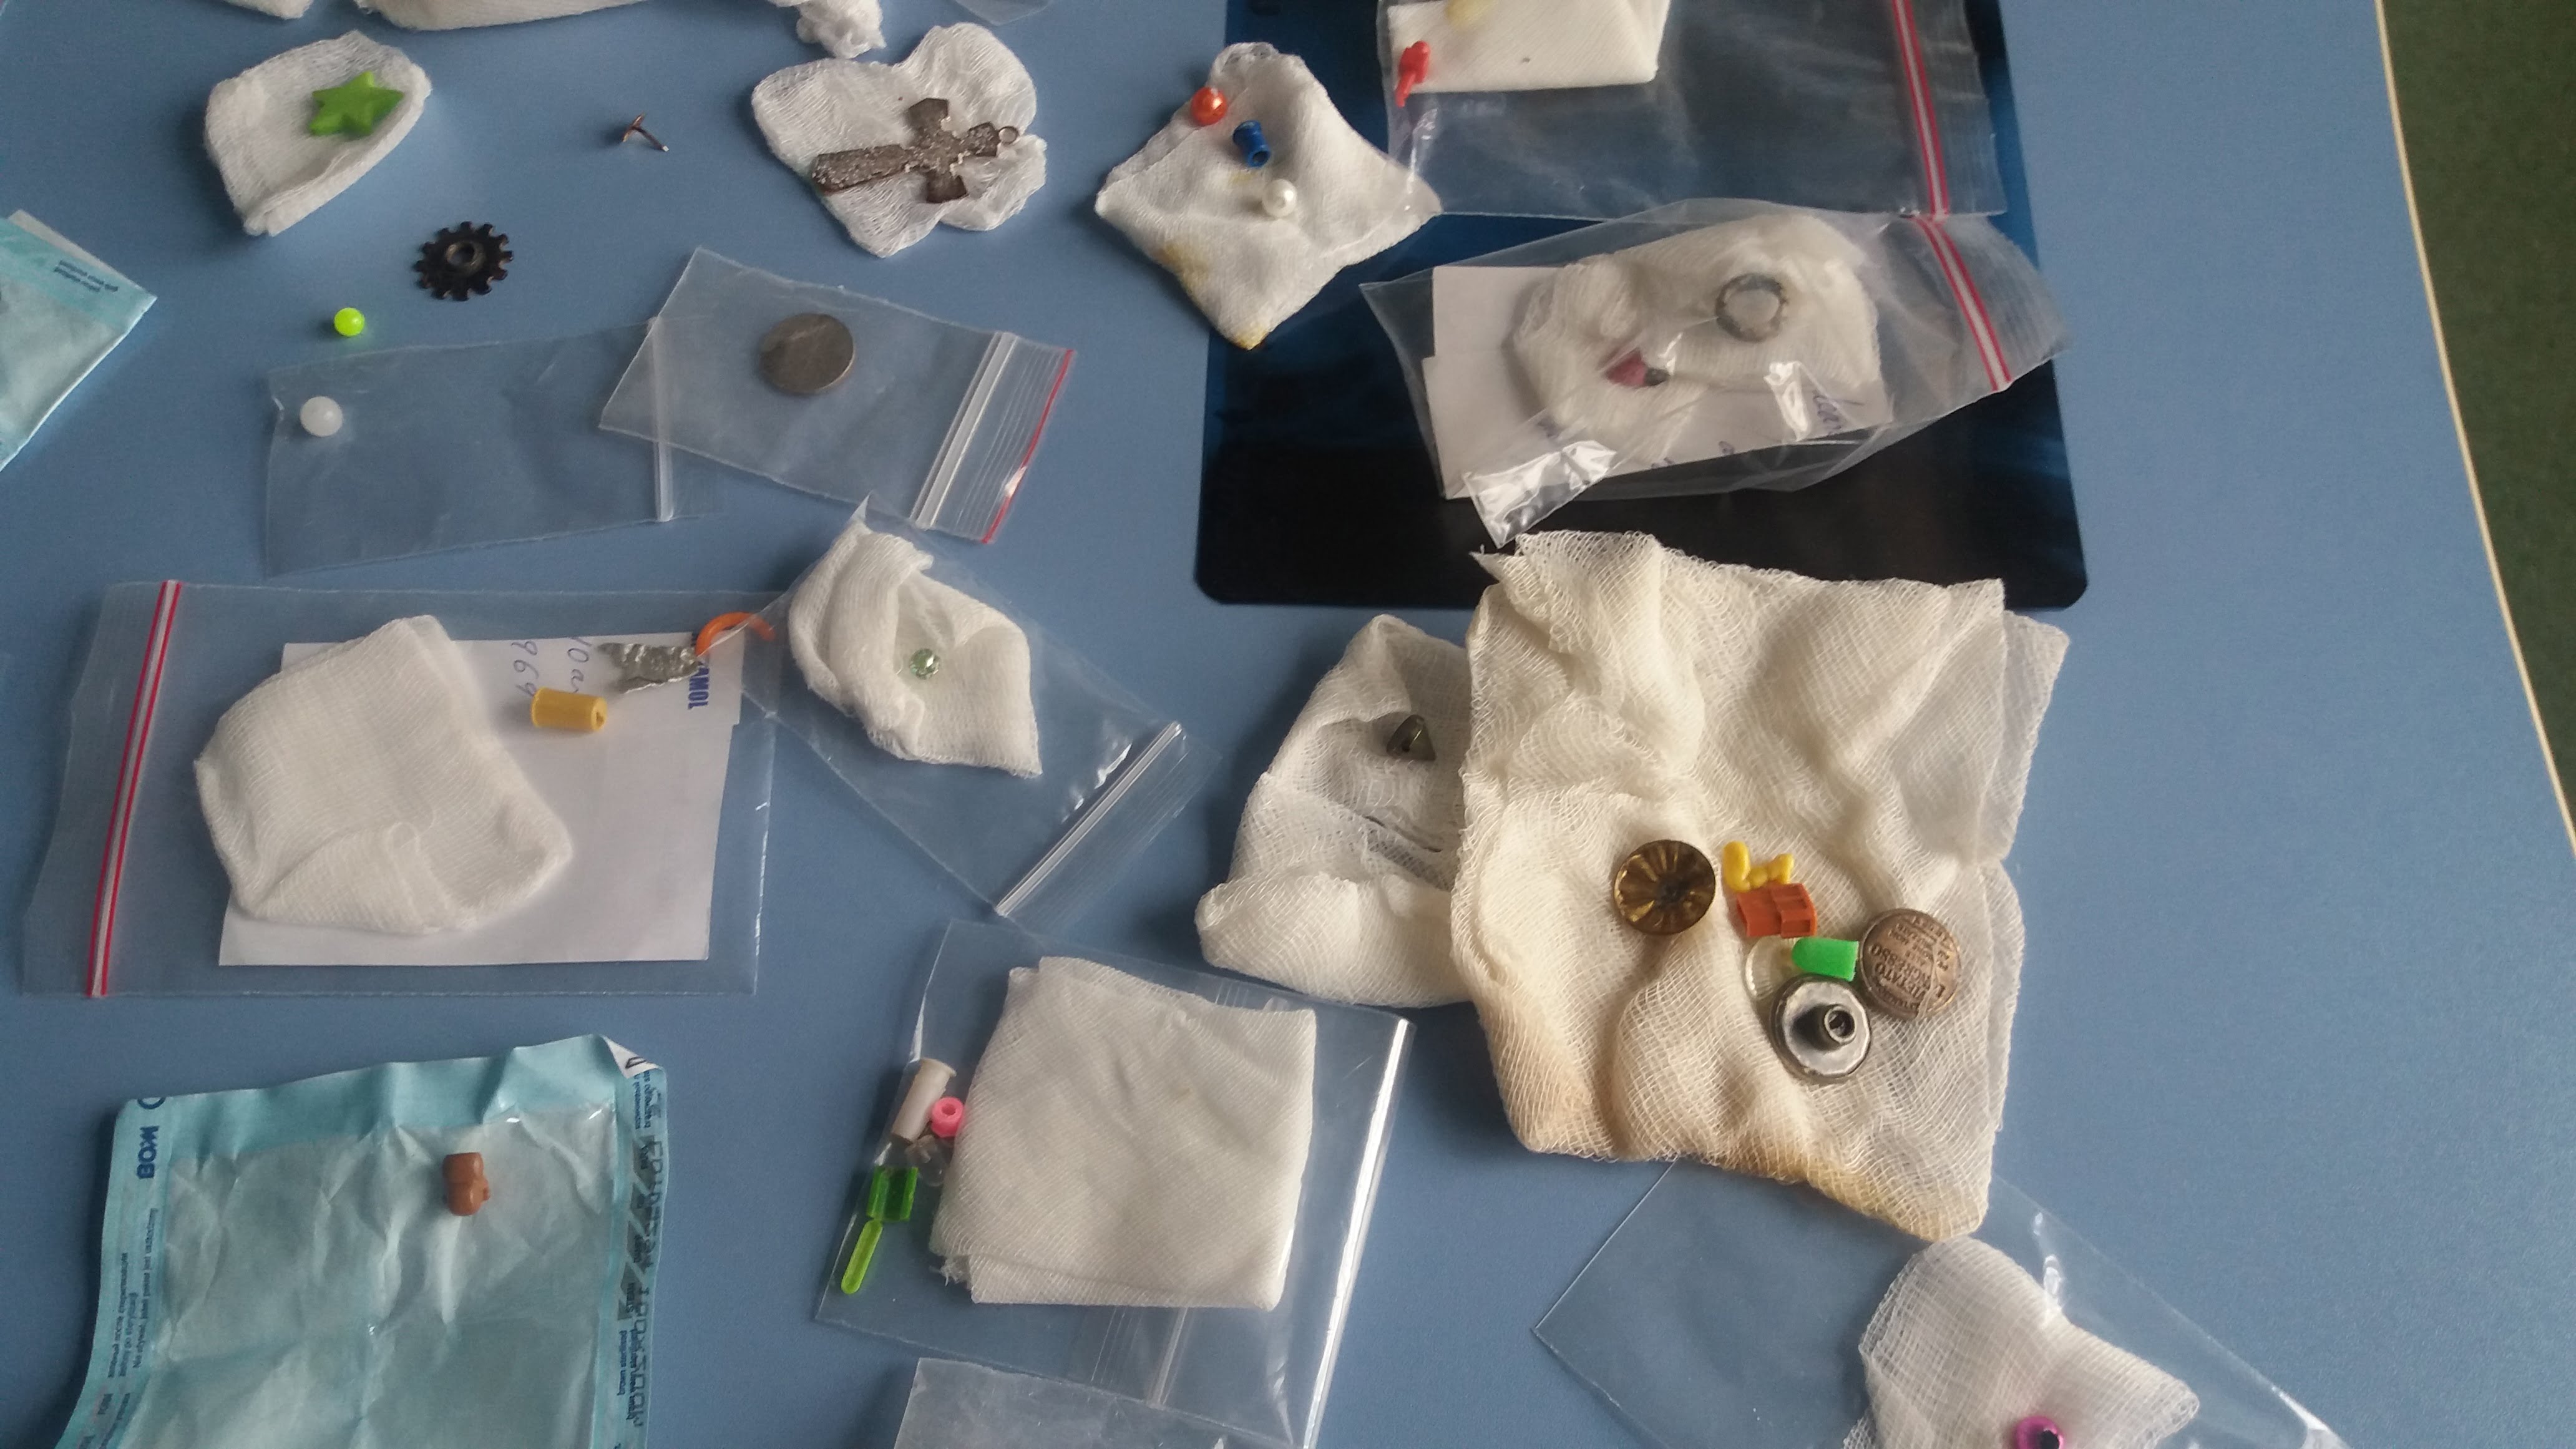 Cele mai ciudate obiecte gasite in stomacul copiilor ajunsi la spital: ace, monede, baterii, medalioane | Demamici.ro